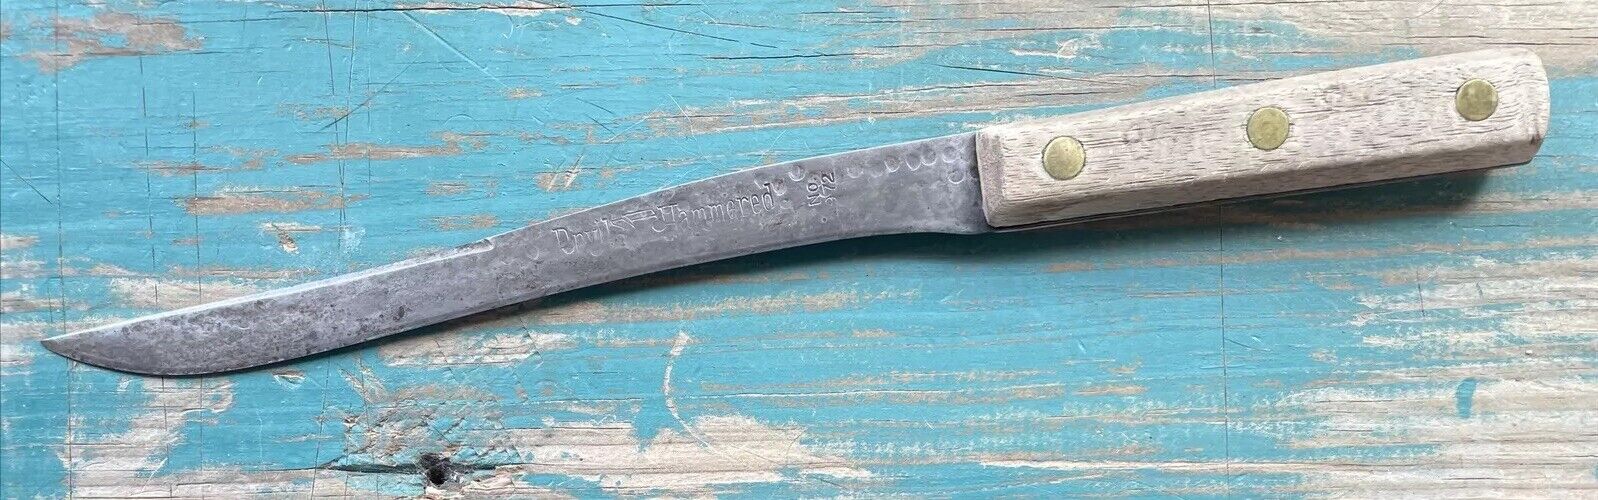 Vintage Anvil Hammered Kitchen Slicing Knife No. 972